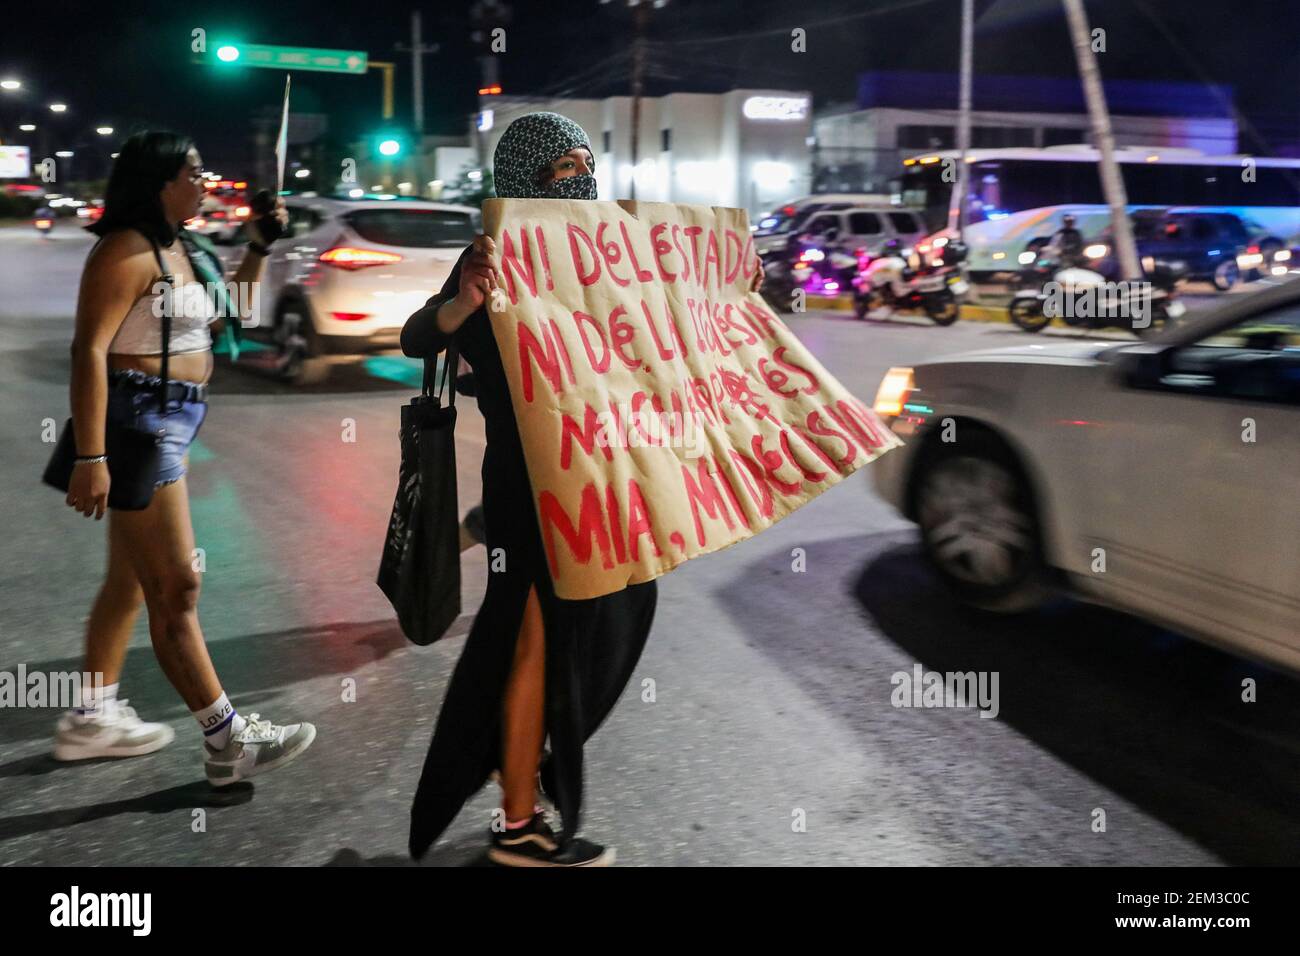 Una mujer participa en una manifestación del grupo feminista 'Area Verde' para exigir la despenalización del aborto en el estado de Quintana Roo en la rotonda de el Albañil el 22 de febrero de 2021 en Cancún, México. Foto de Rodolfo Flores/Eyepix/ABACAPRESS.COM Foto de stock